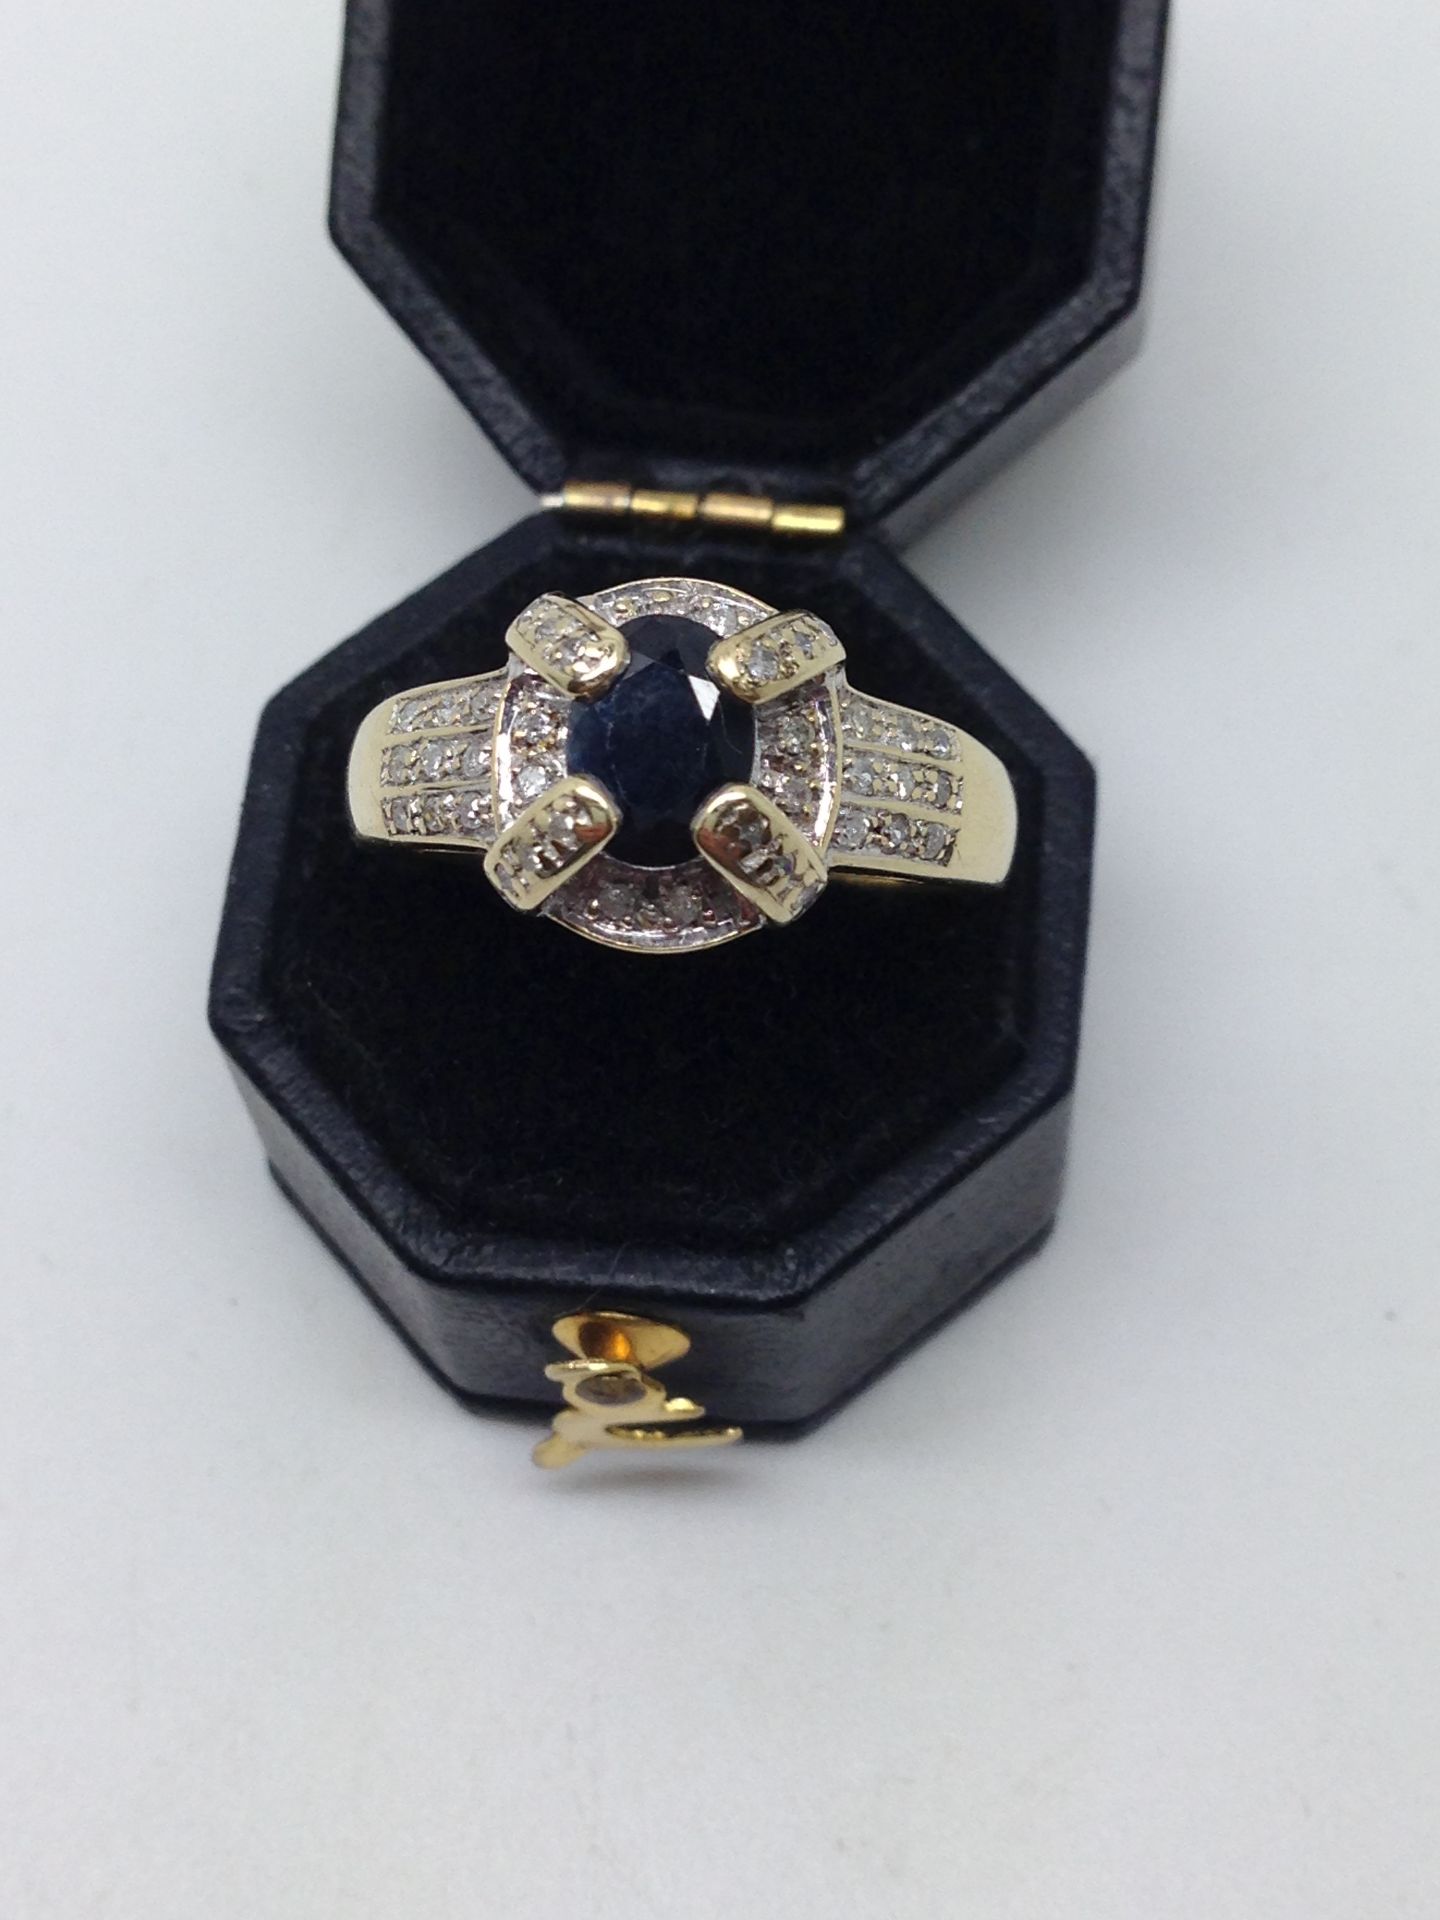 9ct GOLD SAPPHIRE & DIAMOND RING